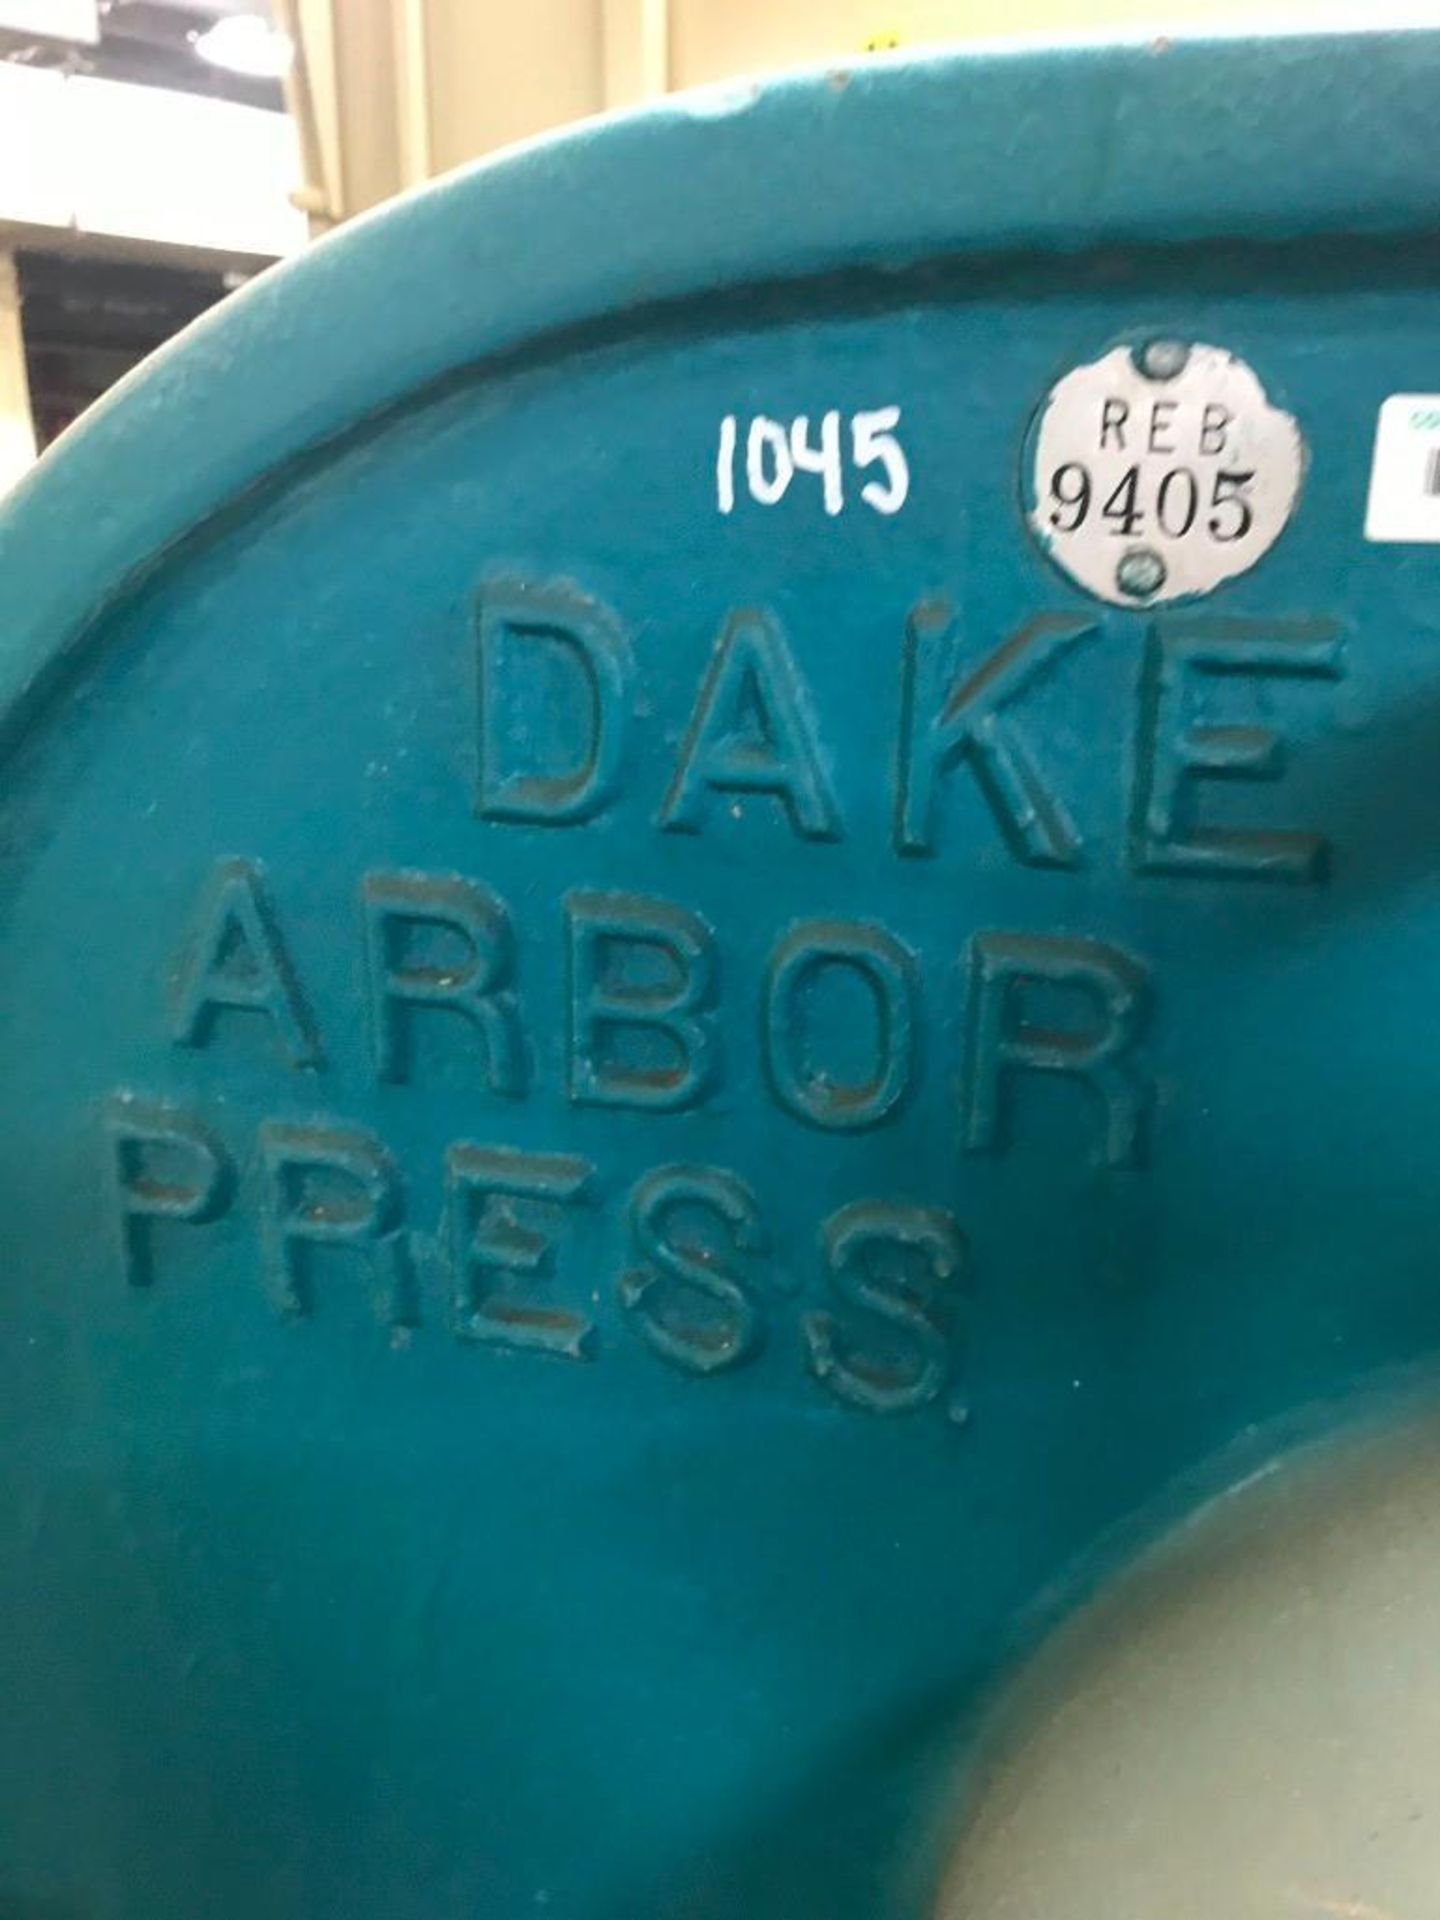 DAKE #3 ARBOR PRESS - Image 2 of 12